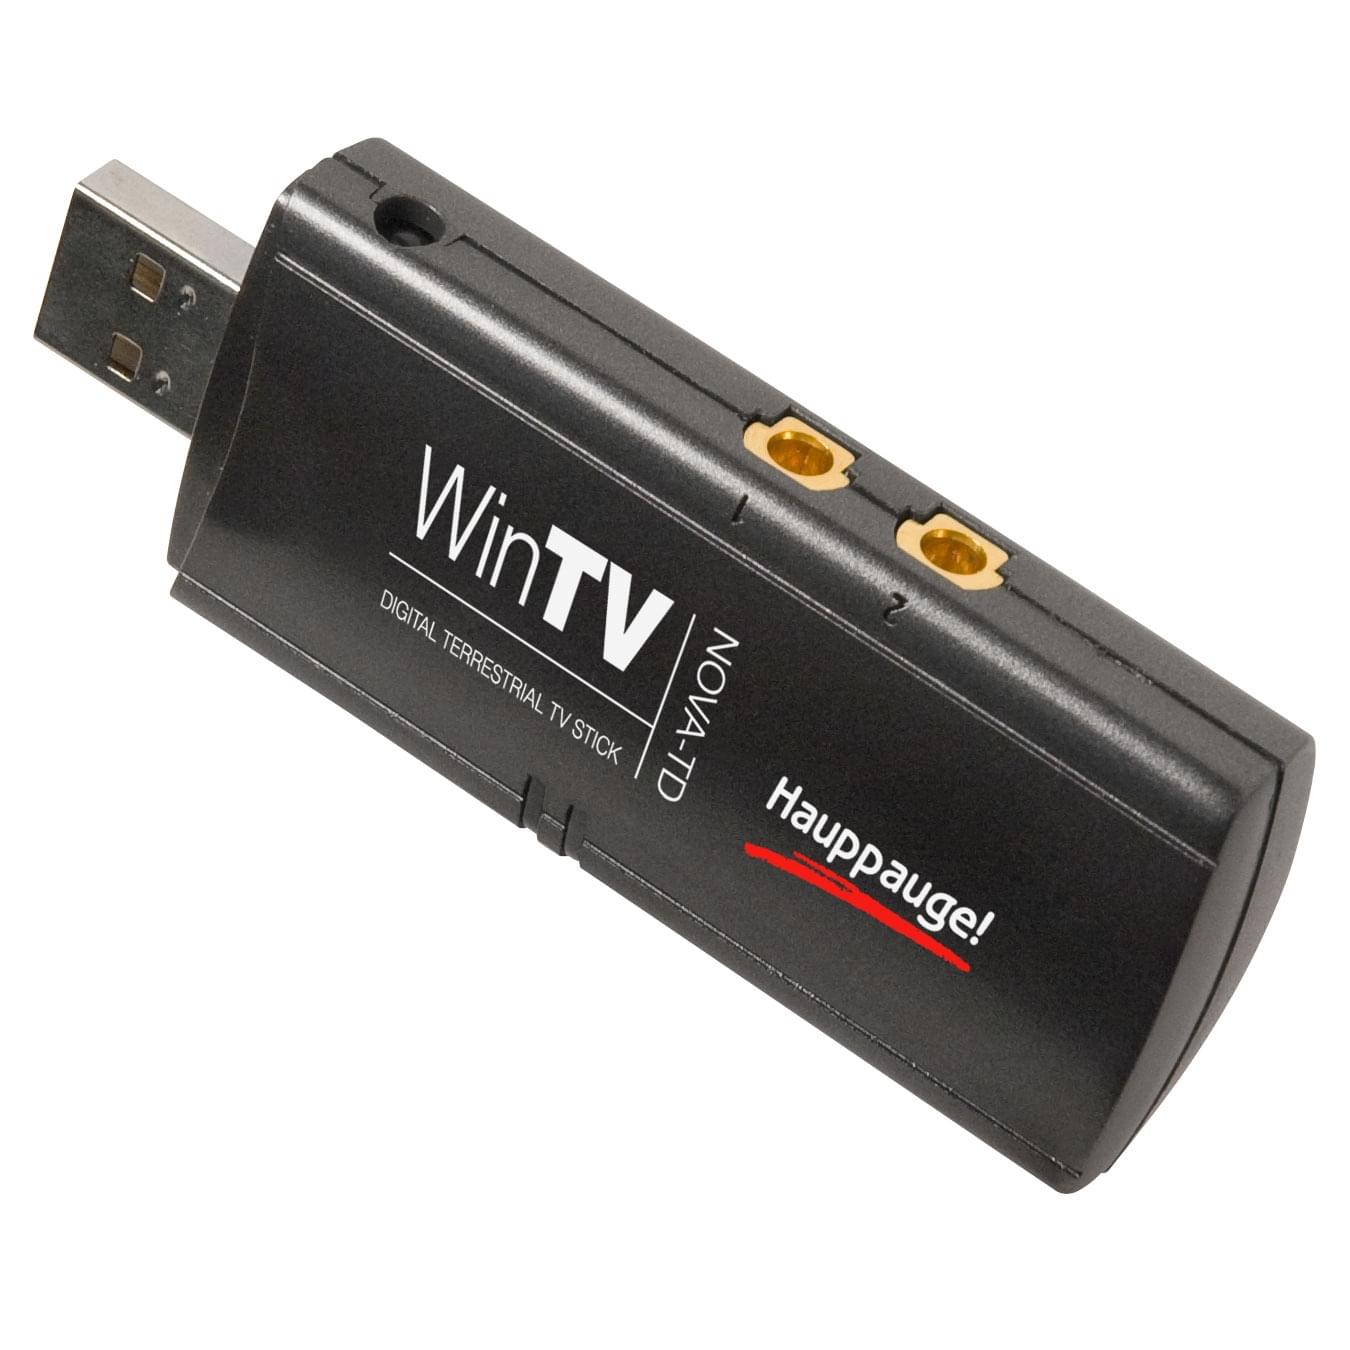 WinTV Duet HD (Double Tuner TNT) - Tuner TNT Hauppauge - 0